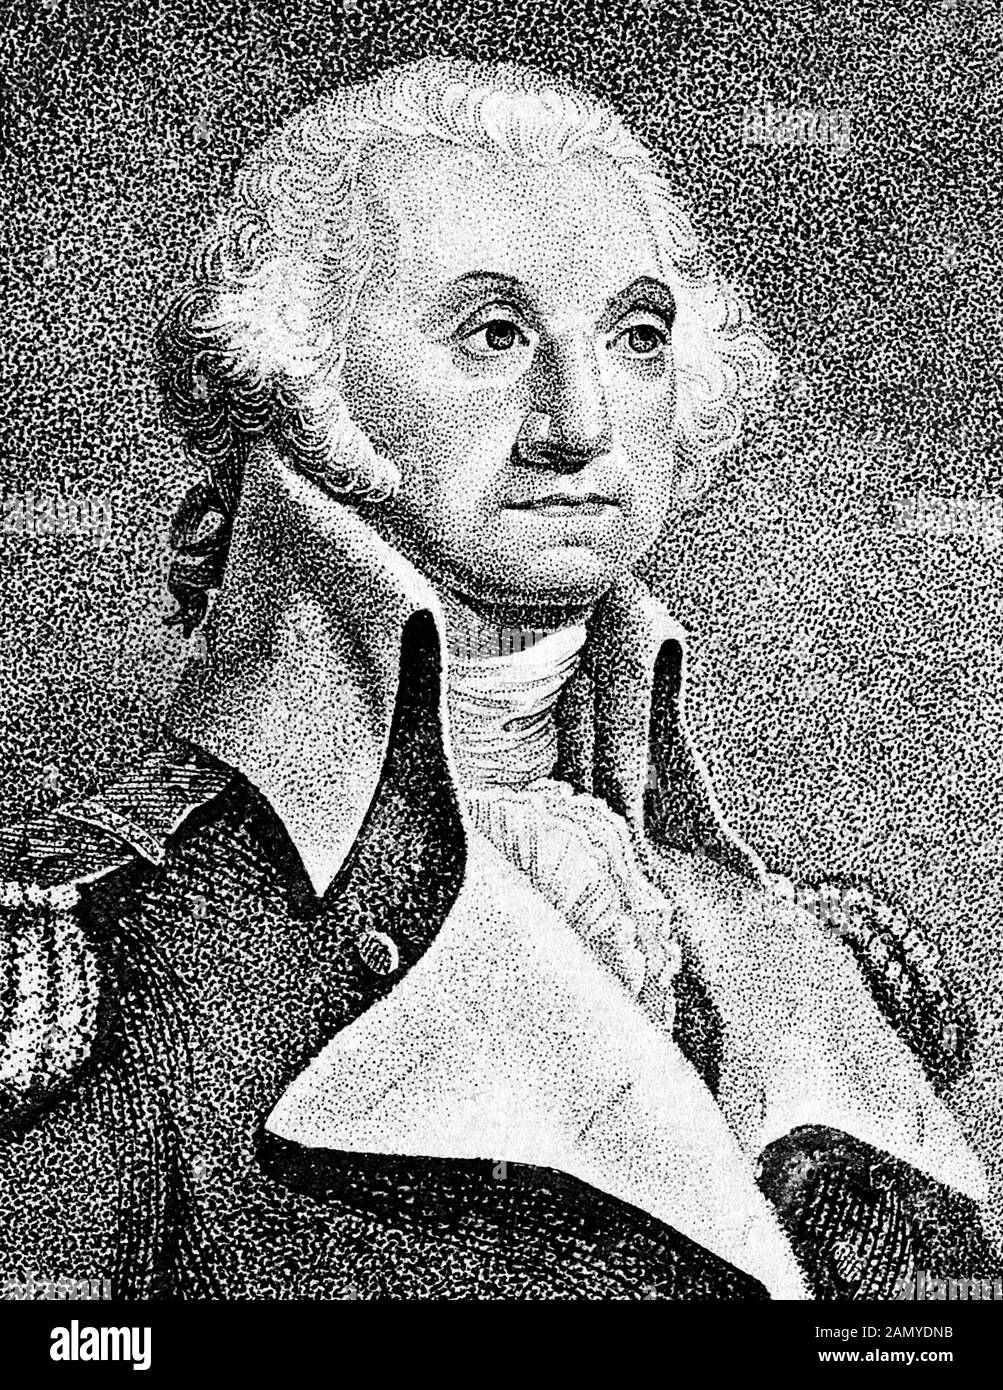 Portrait vintage du général George Washington (1732 - 1799) – Commandant de l'Armée continentale dans la guerre révolutionnaire américaine / guerre d'indépendance (1775 - 1783) et le premier Président des États-Unis (1789 - 1797). Détail d'un imprimé vers 1812 à partir d'une gravure de Thomas Gimbrede. Banque D'Images